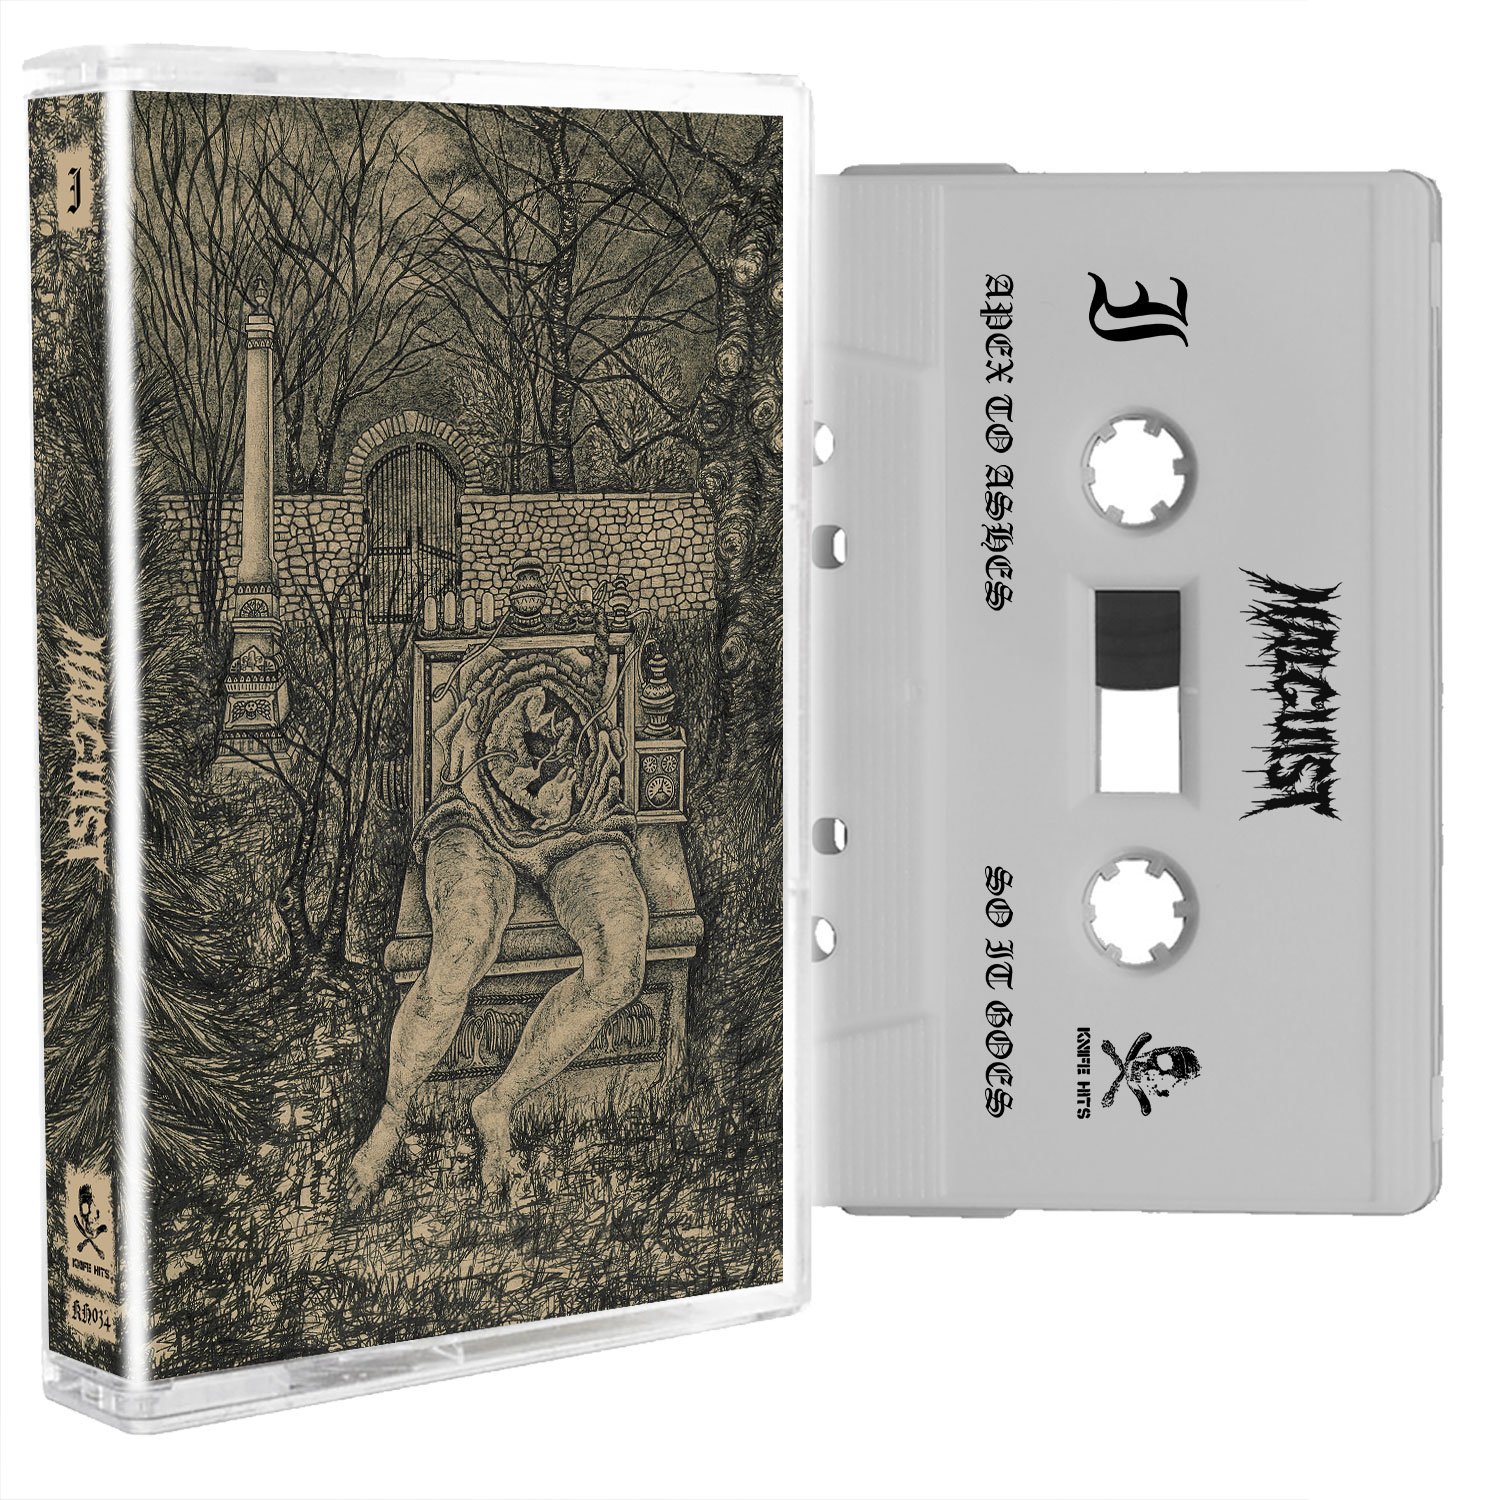 Malguist - I cassette